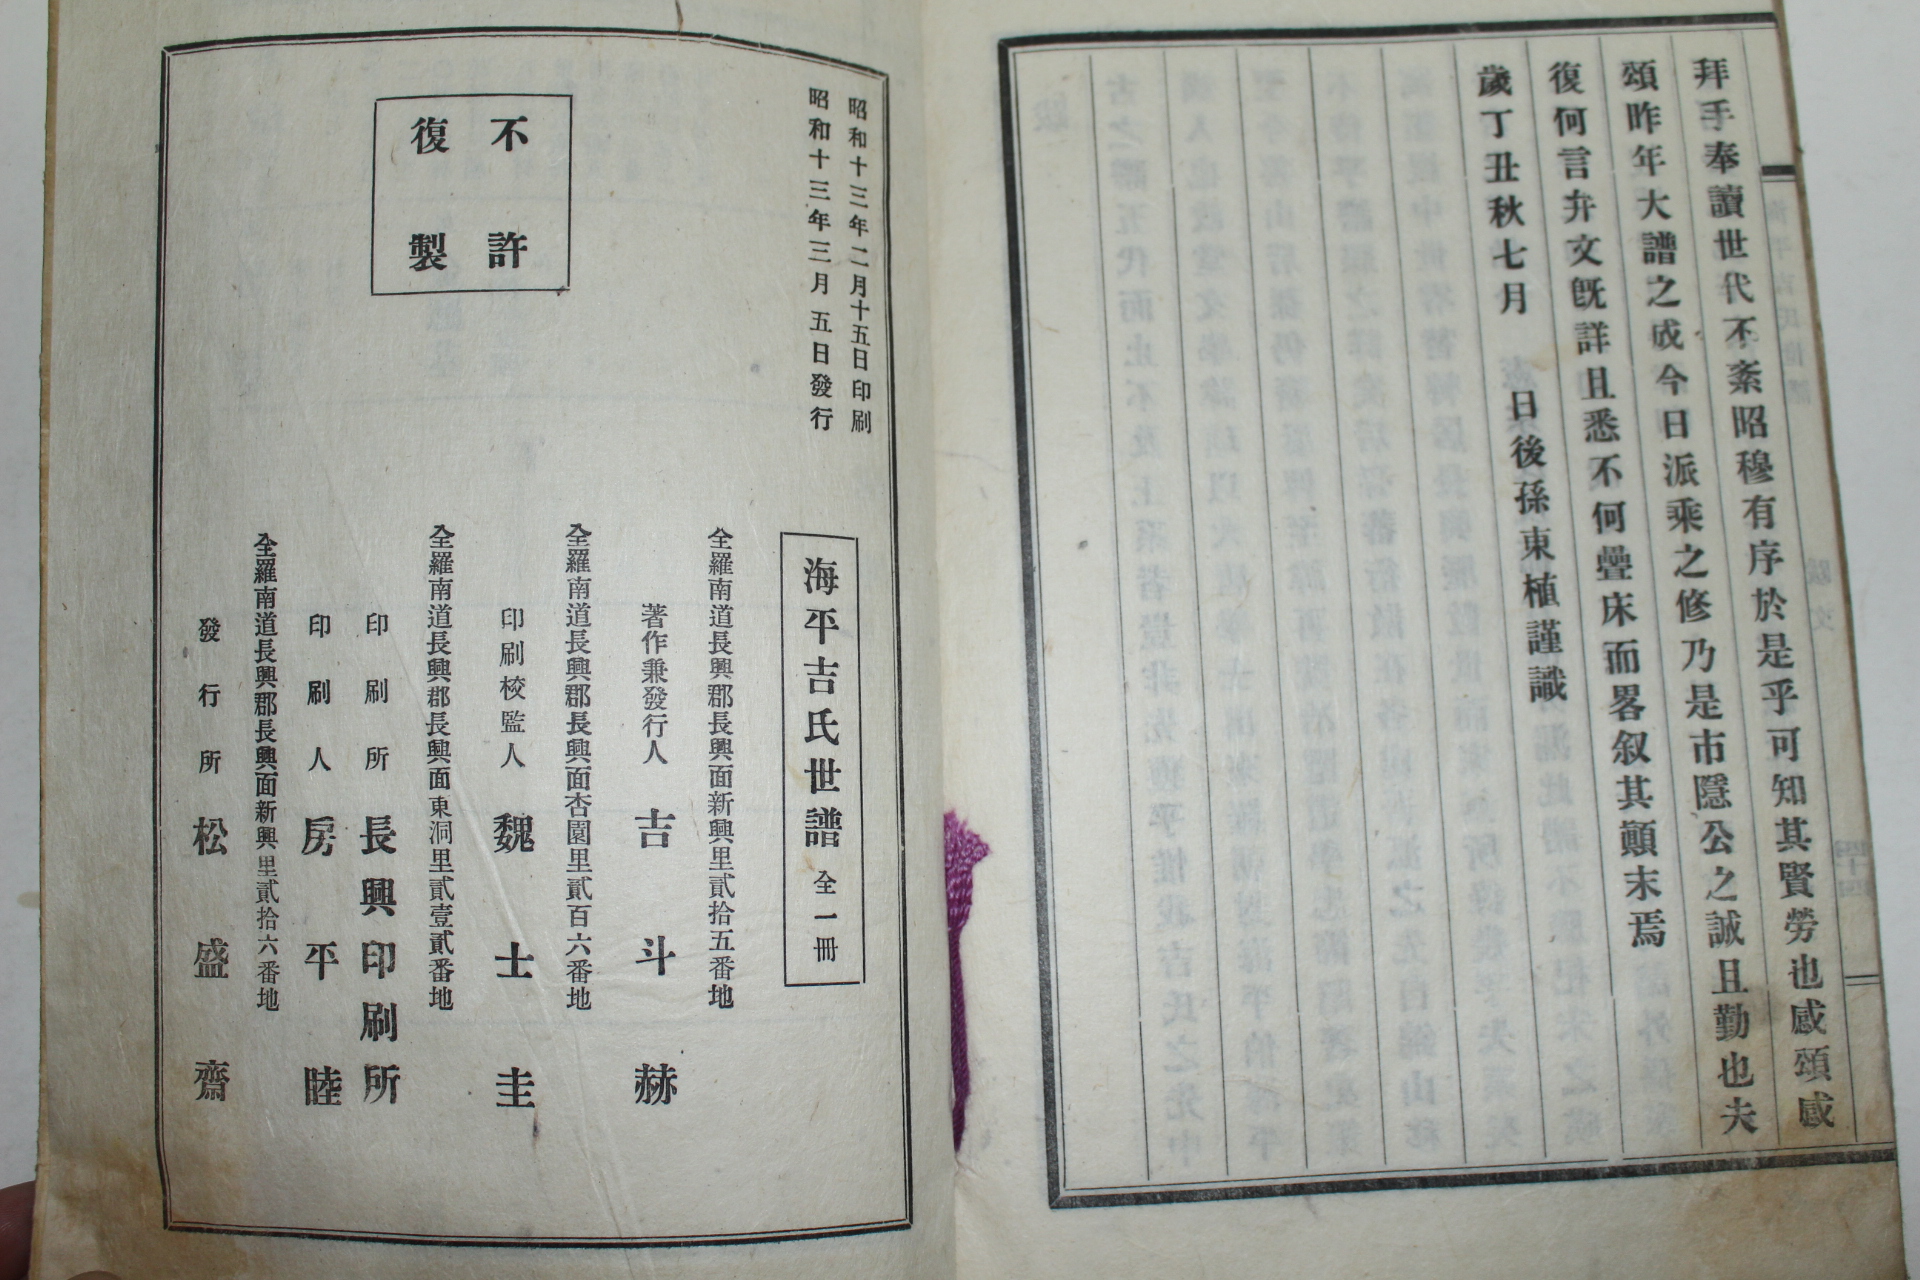 1938년 해평길씨세보(海平吉氏世譜) 1책완질